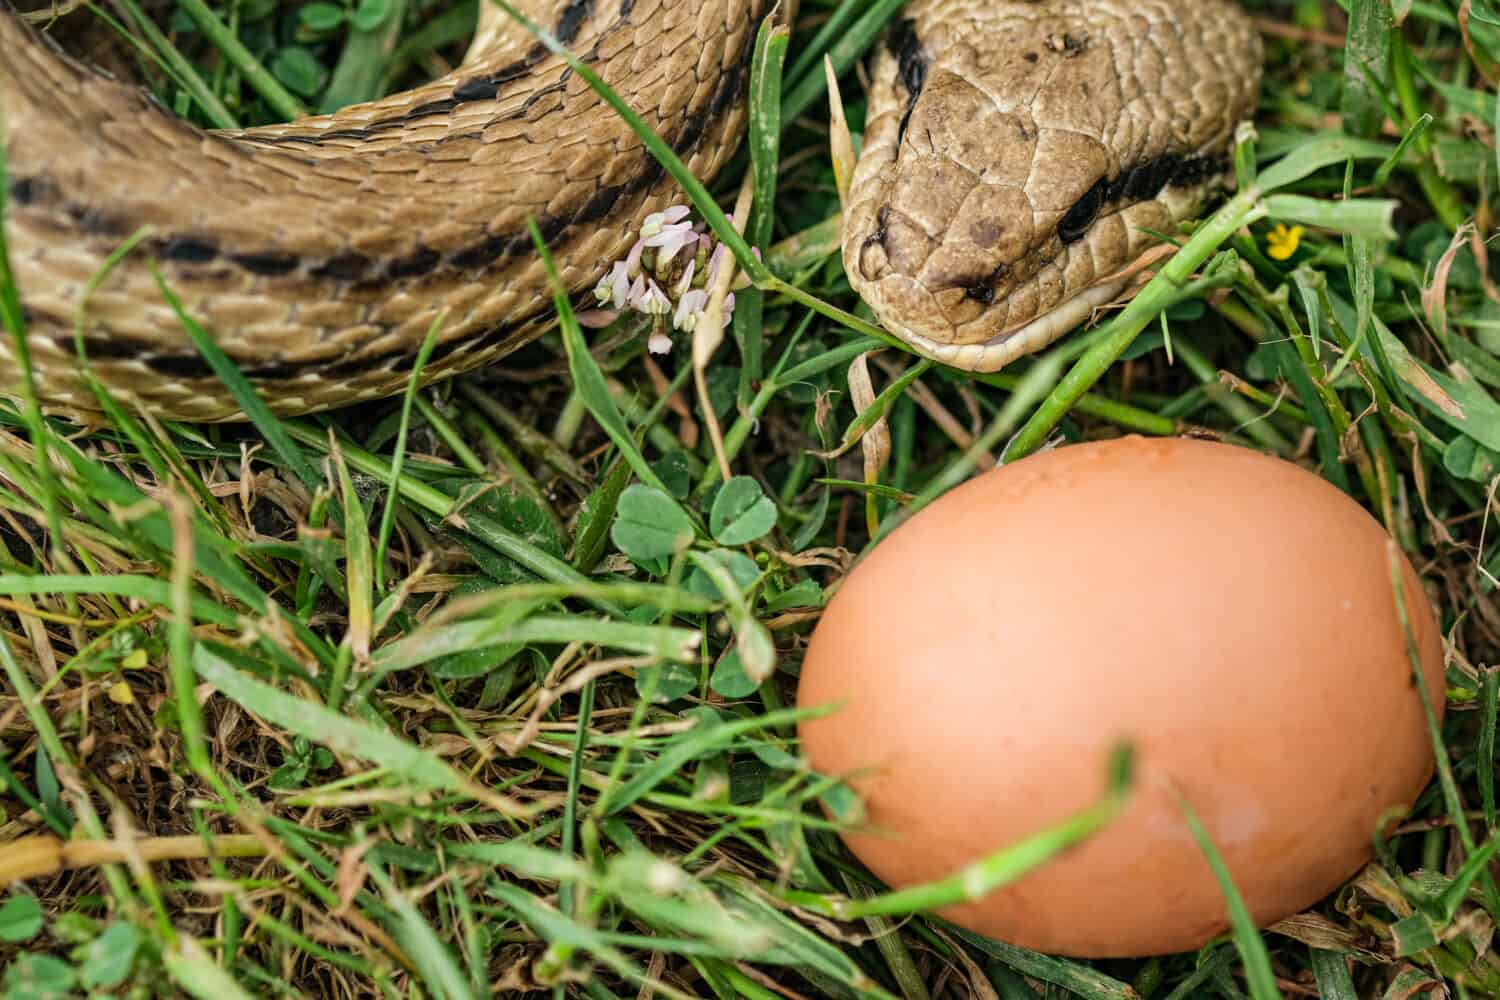 Snake egg eater species,predator reptile eye,skin details,cervone serpents